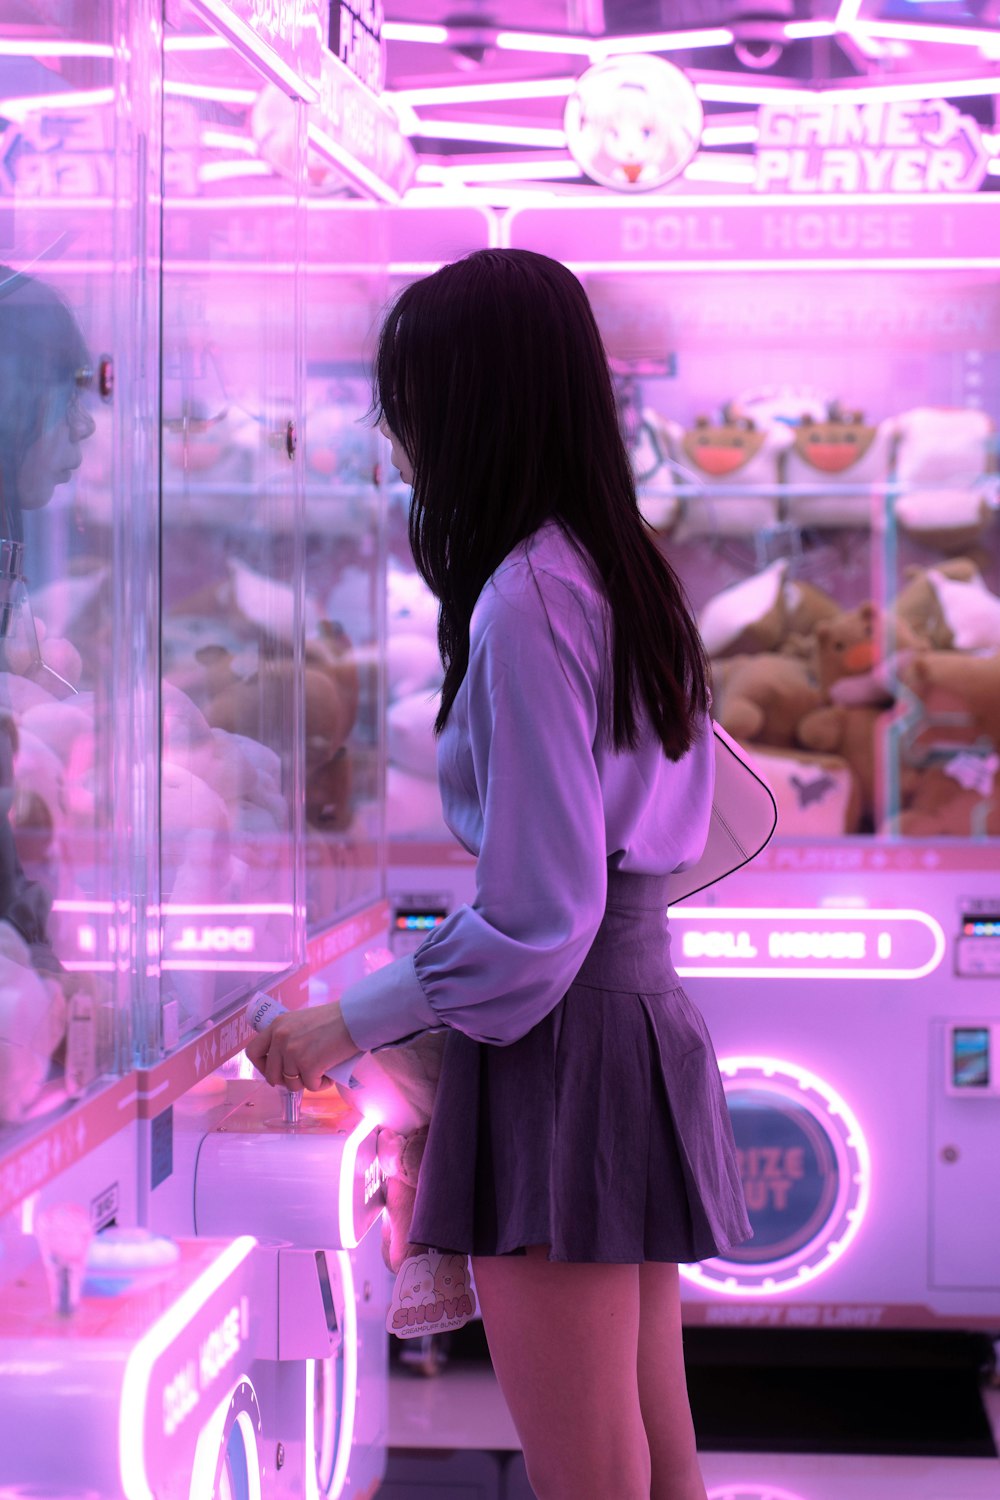 una mujer parada frente a una máquina expendedora